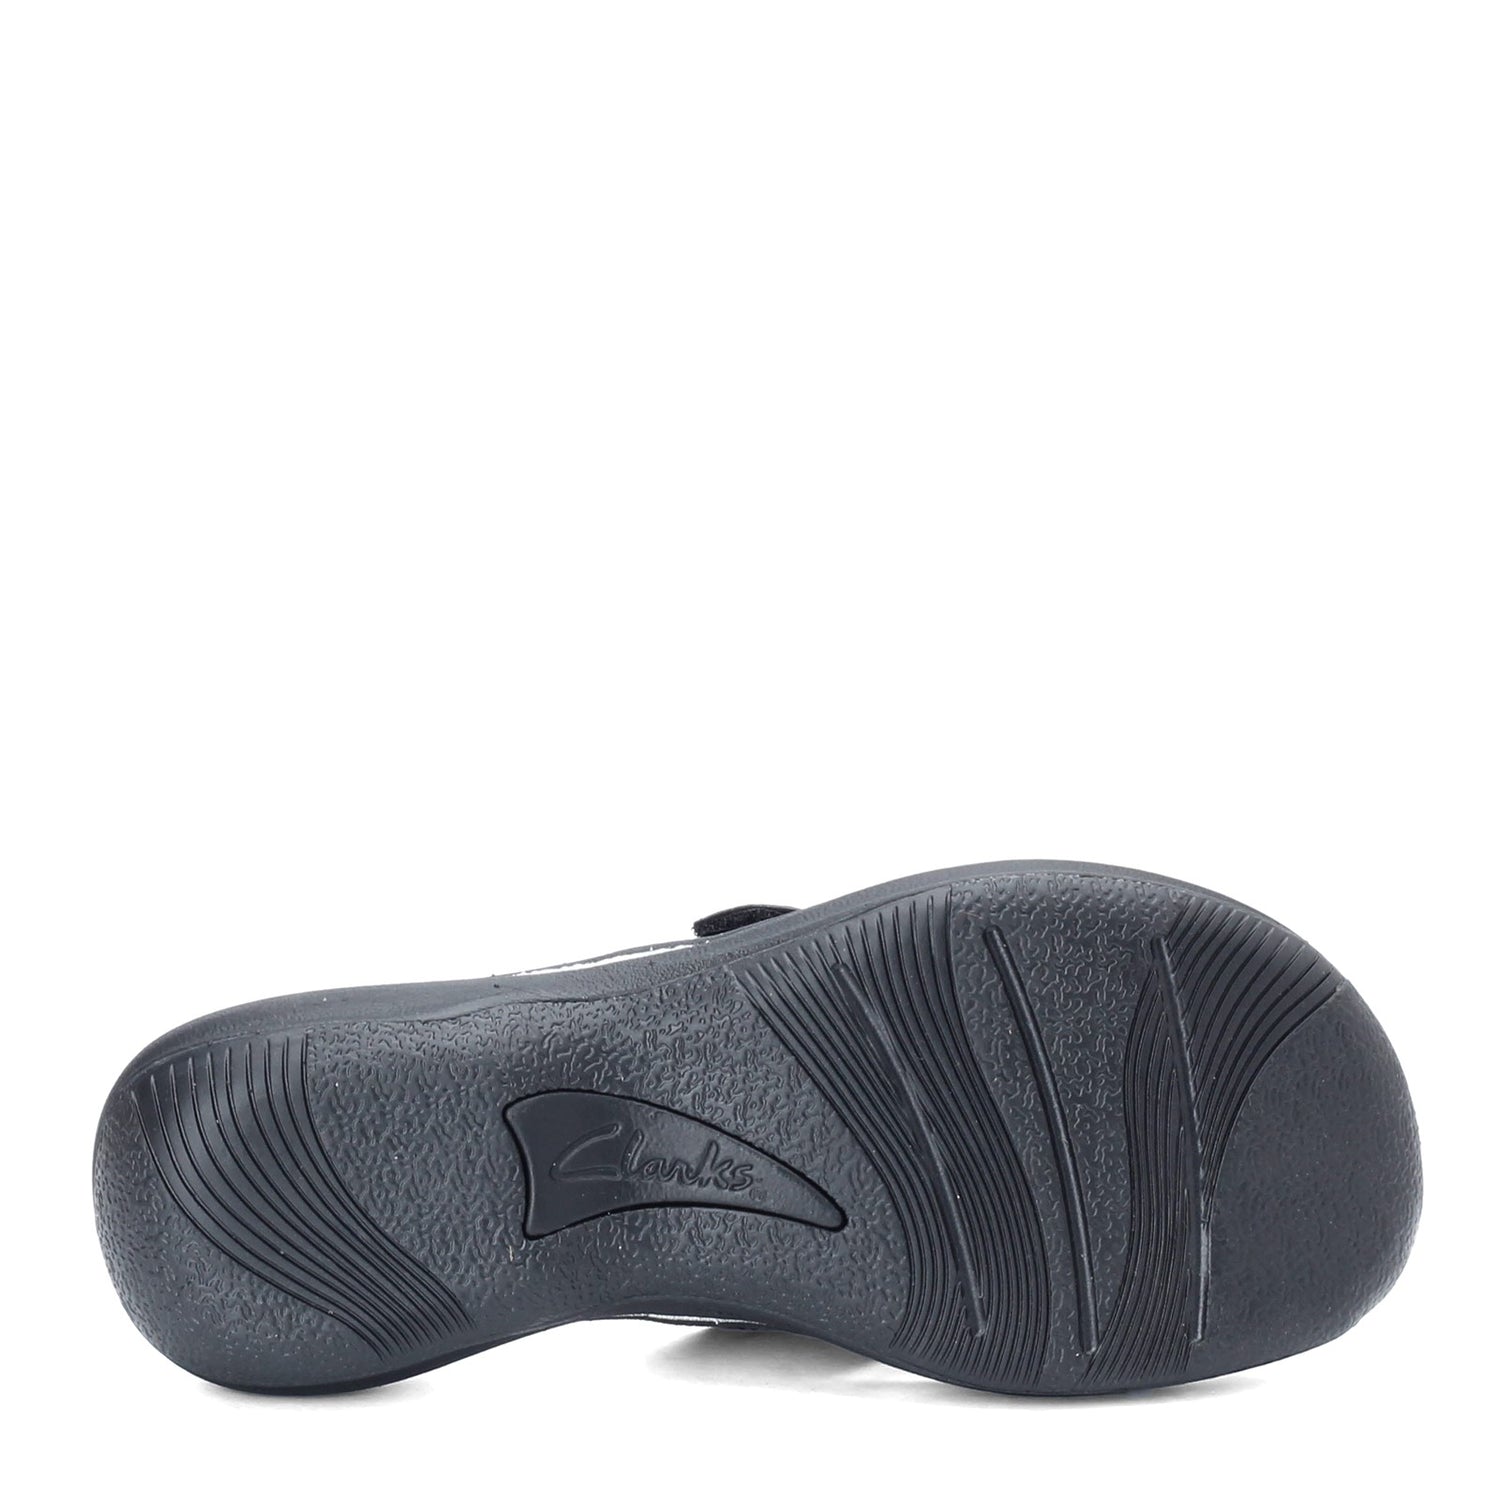 Peltz Shoes  Women's Clarks Breeze Sea Sandal BLACK PATENT 26133671